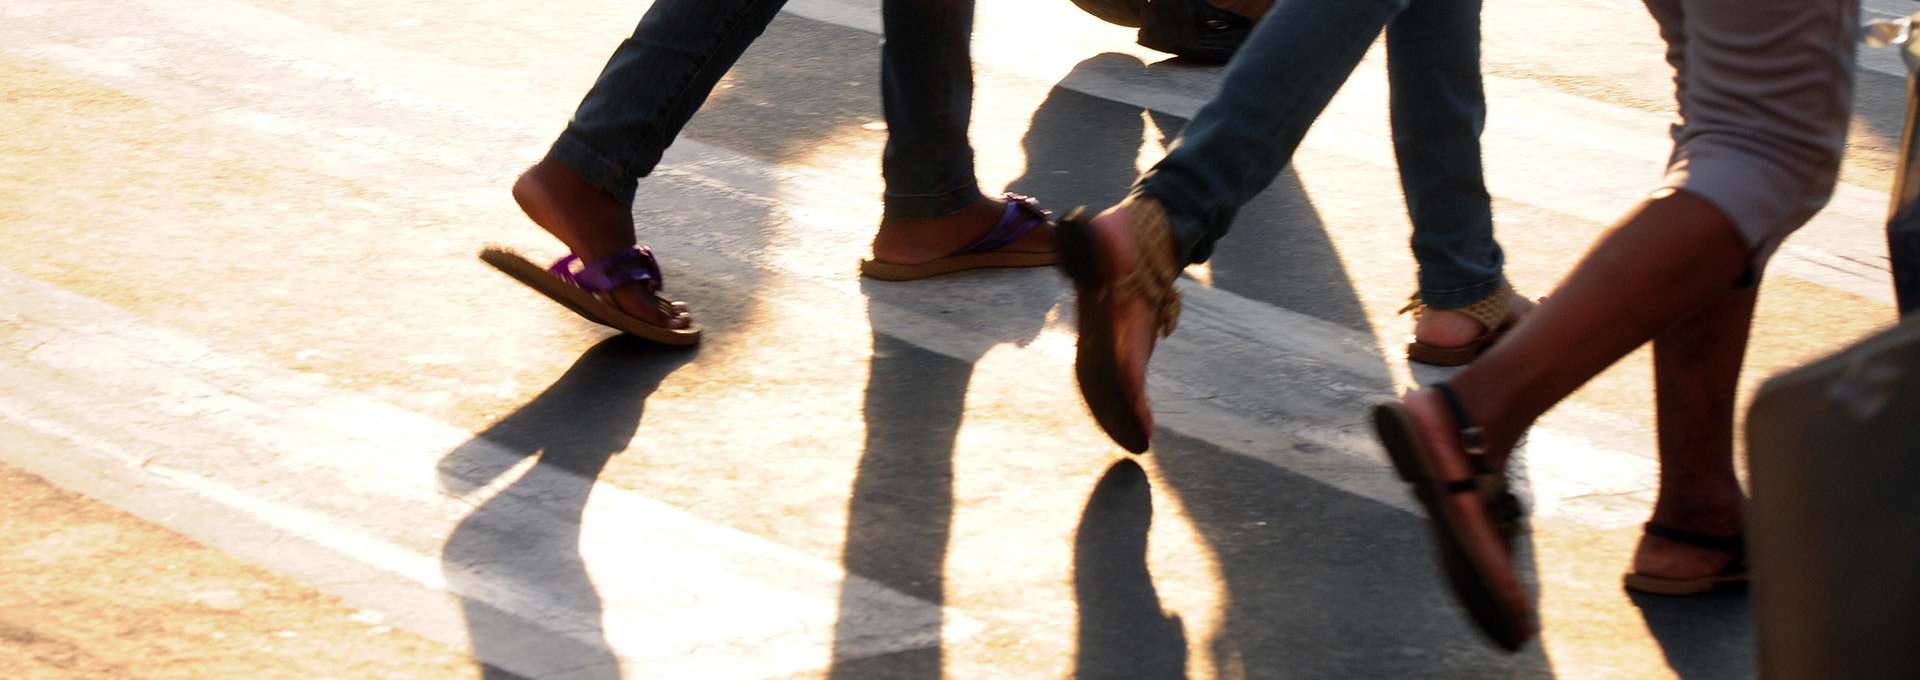 Imagem mostra o andar de algumas pessoas no cotidiano das cidades